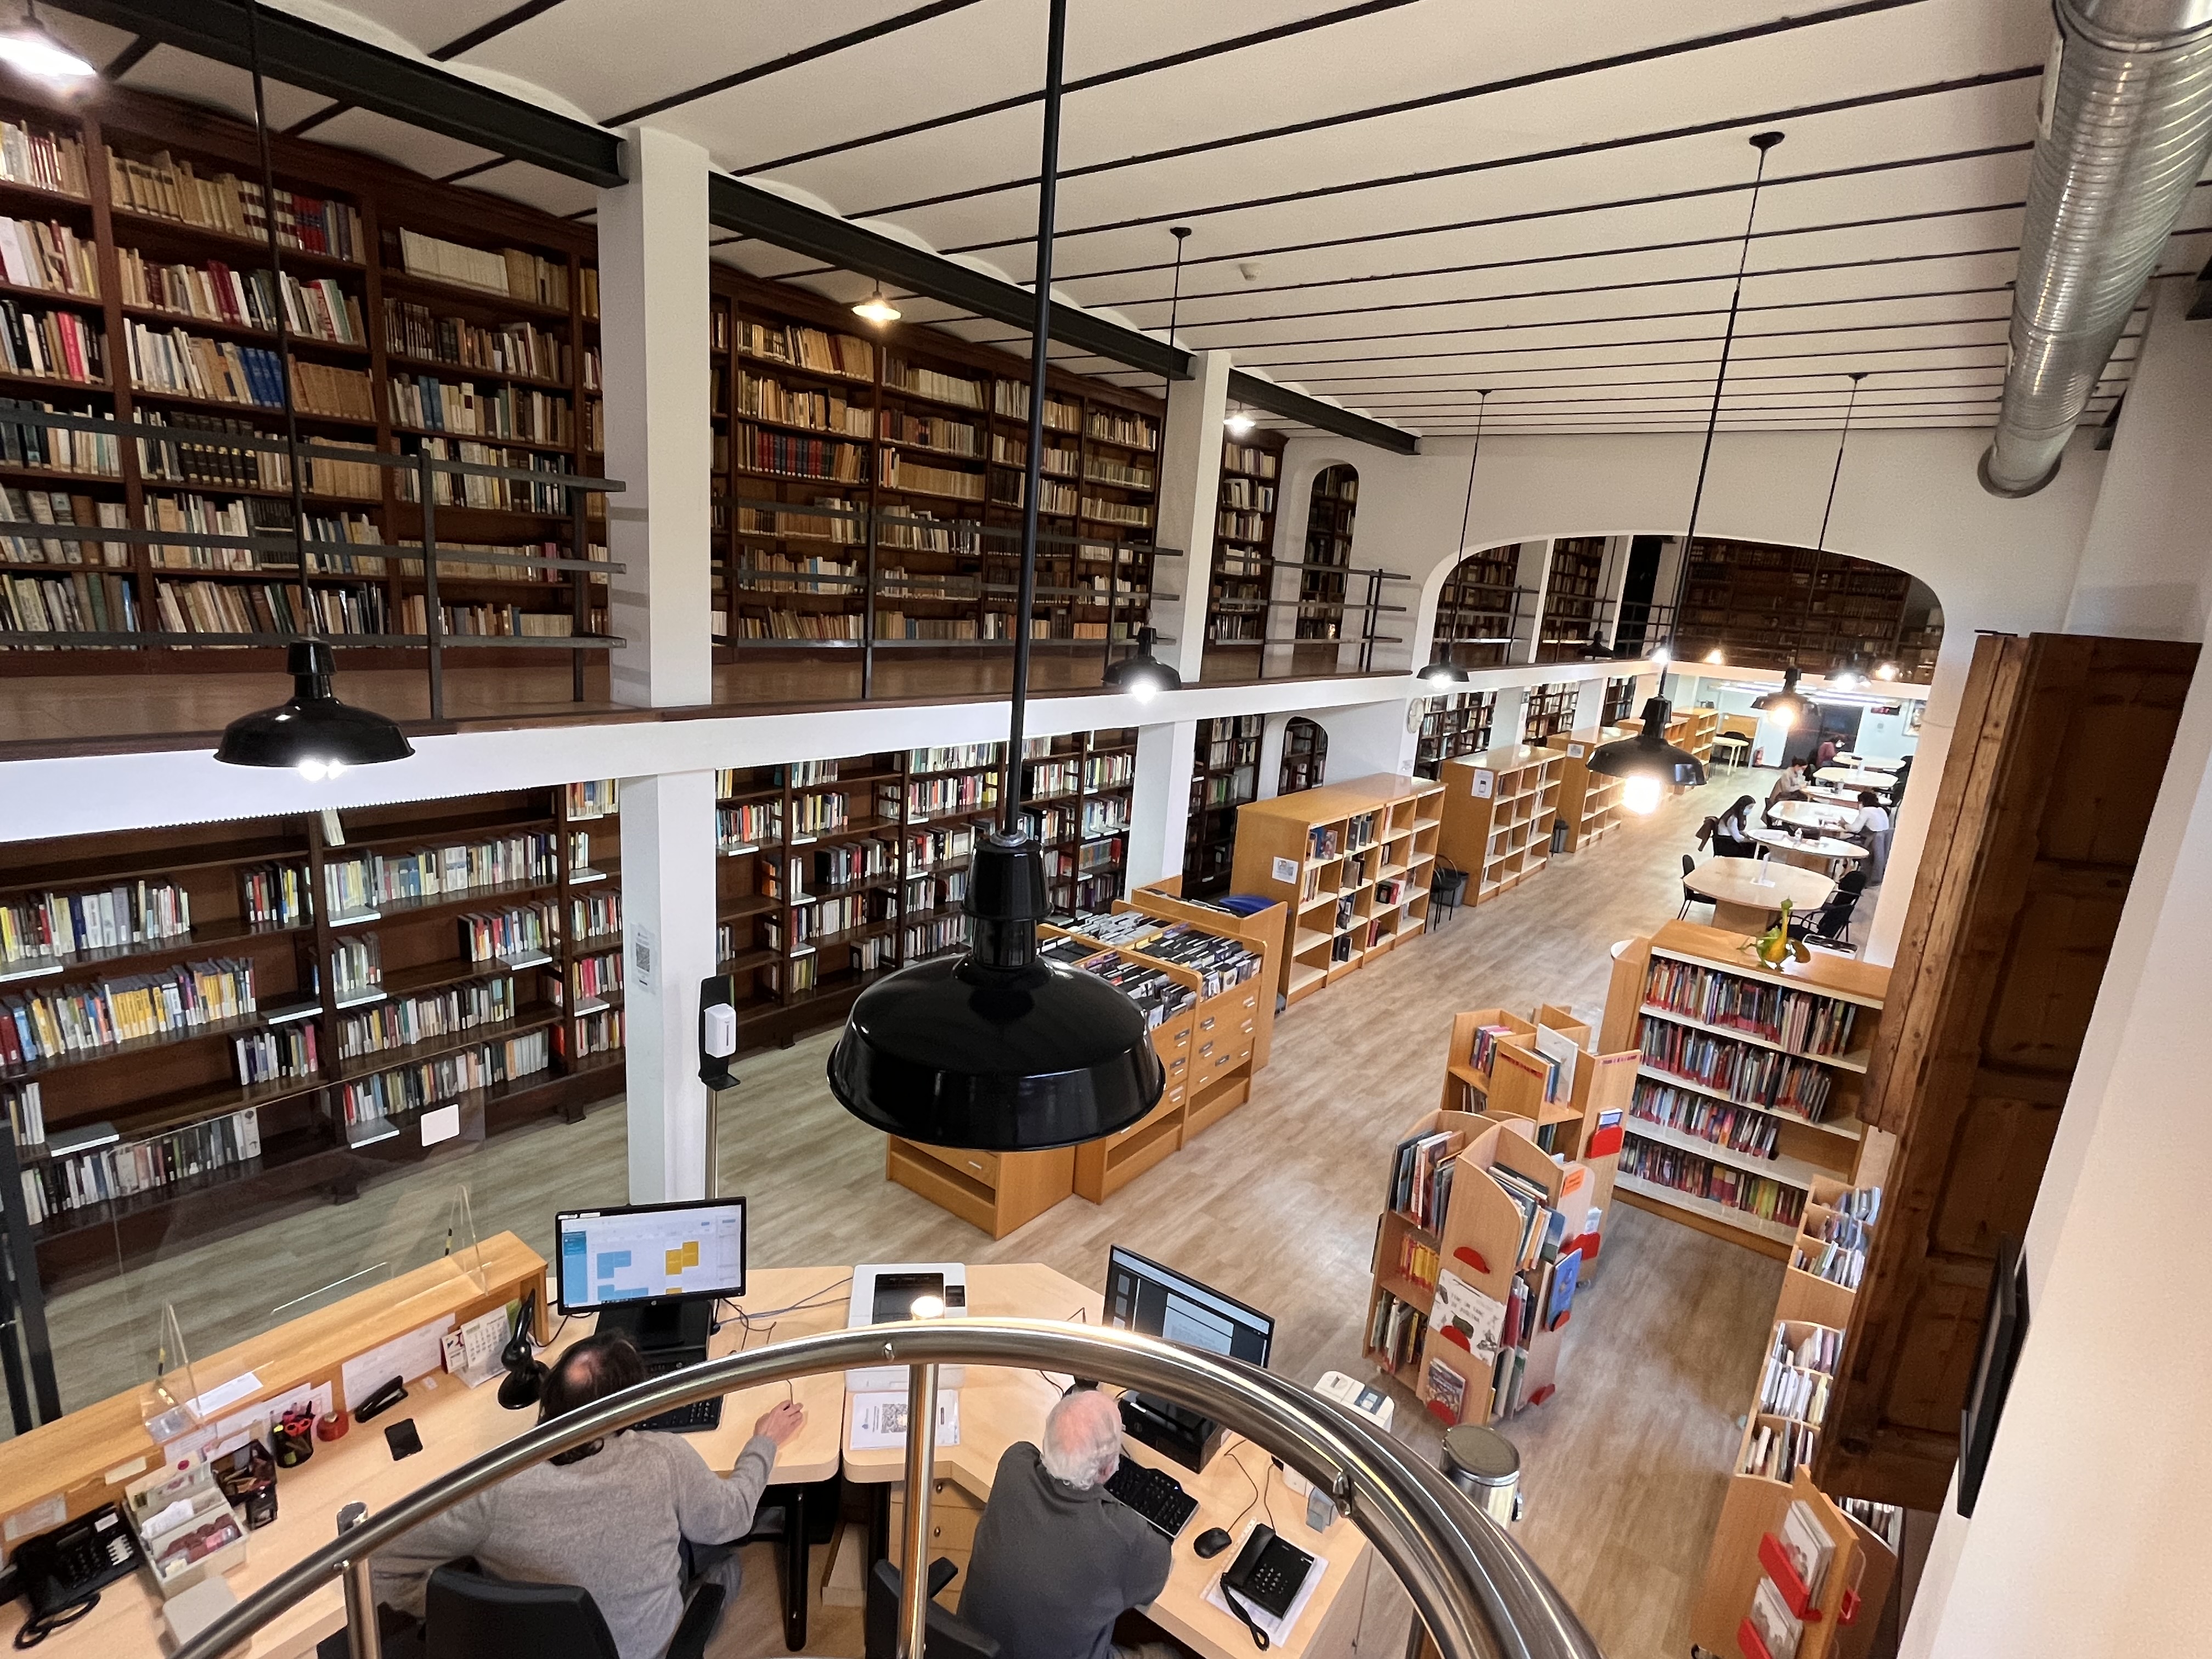 La biblioteca: un espai per a la lectura, l'estudi i el gaudi de la cultura